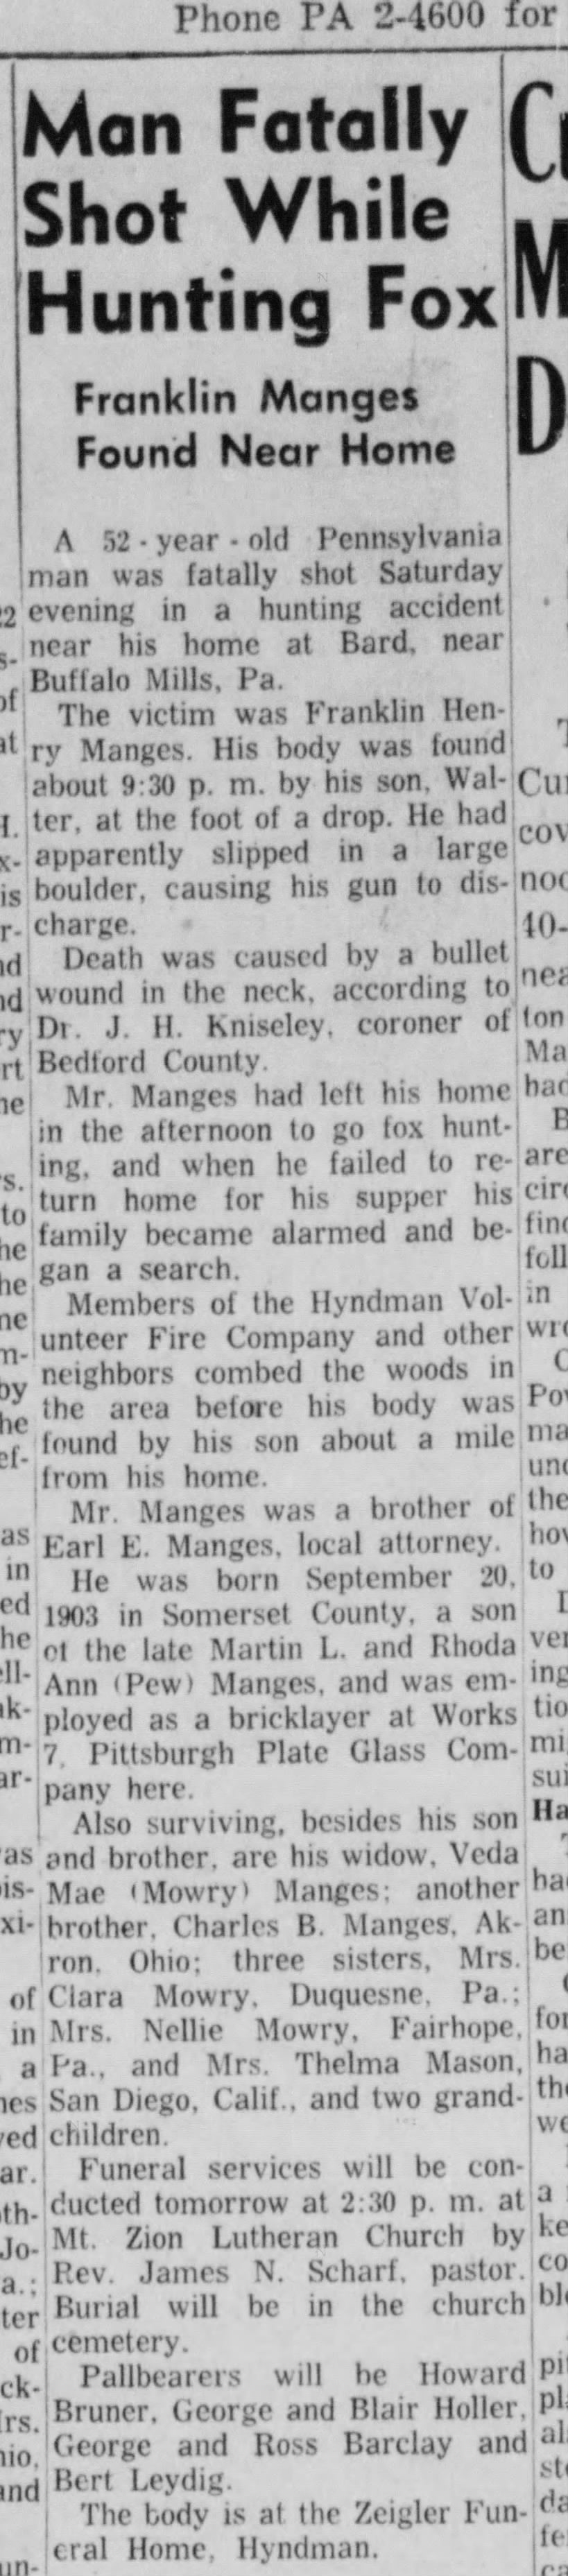 Franklln Henry Manges fatally shot while fox hunting Feb 1957